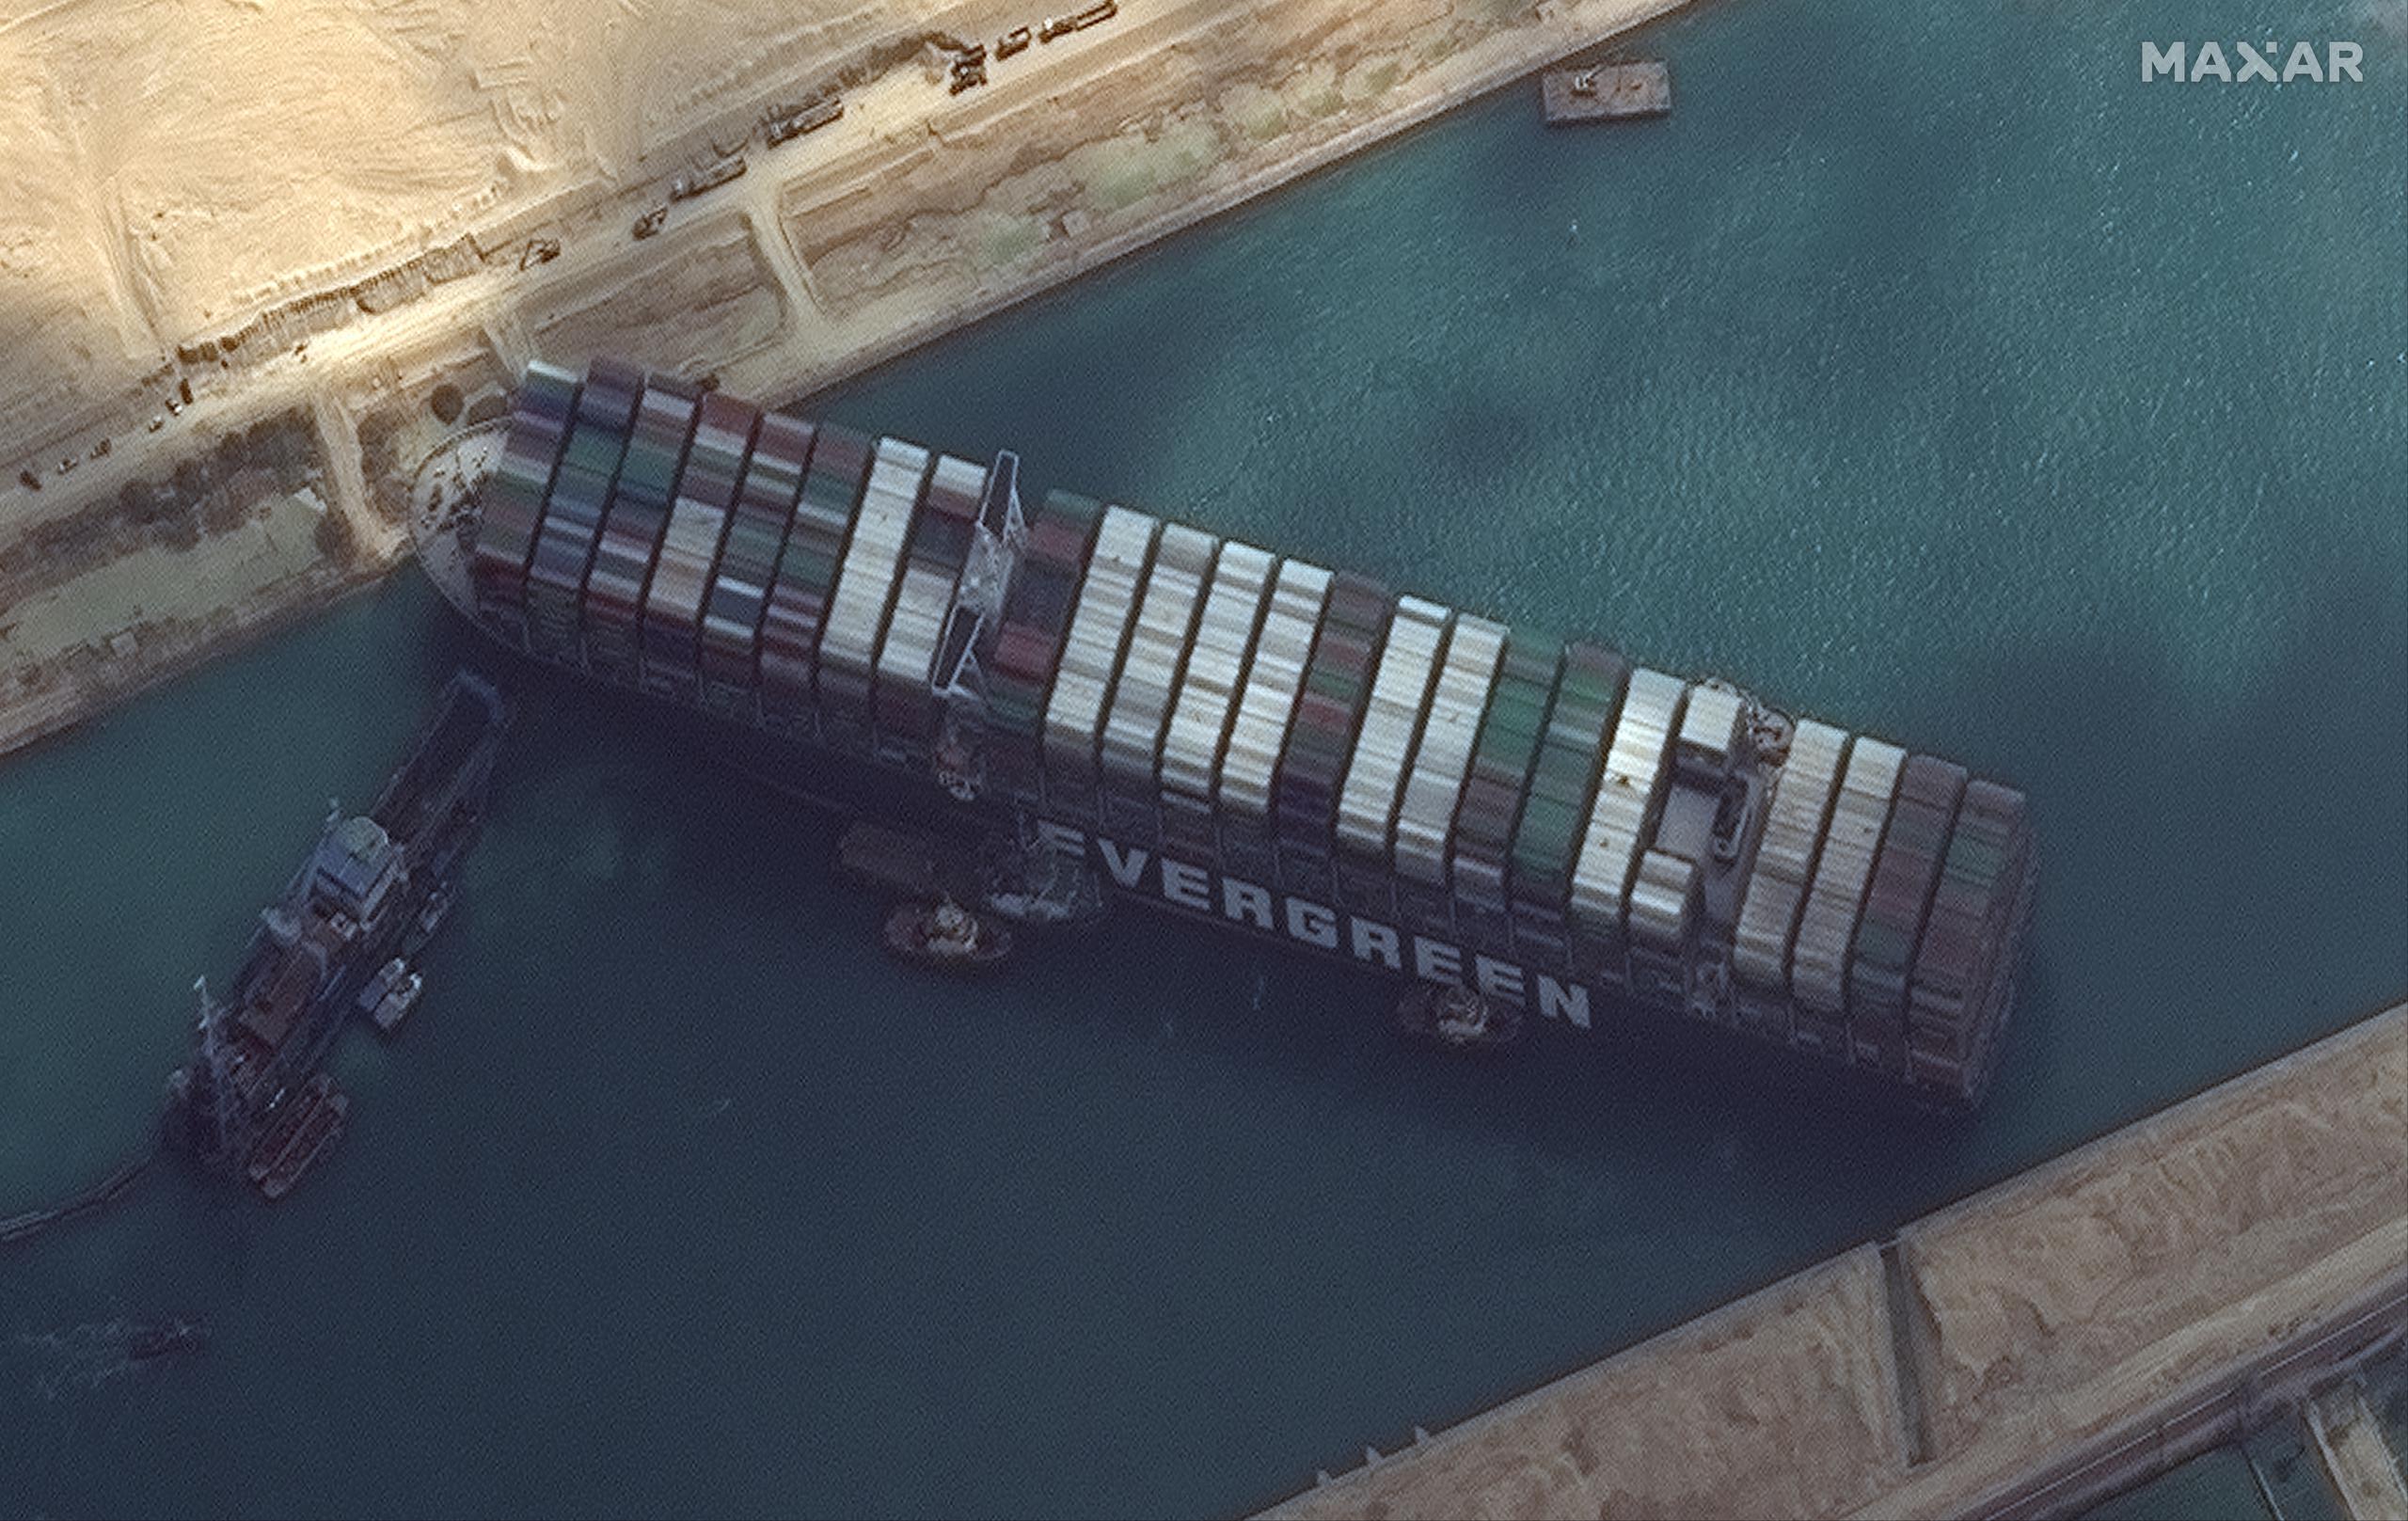 Imagen satelital que muestra cómo quedó el buque Ever Given tras encallar en el Canal de Suez, en Egipto. Su posición impide desde el martes el transito de barcos por el canal.